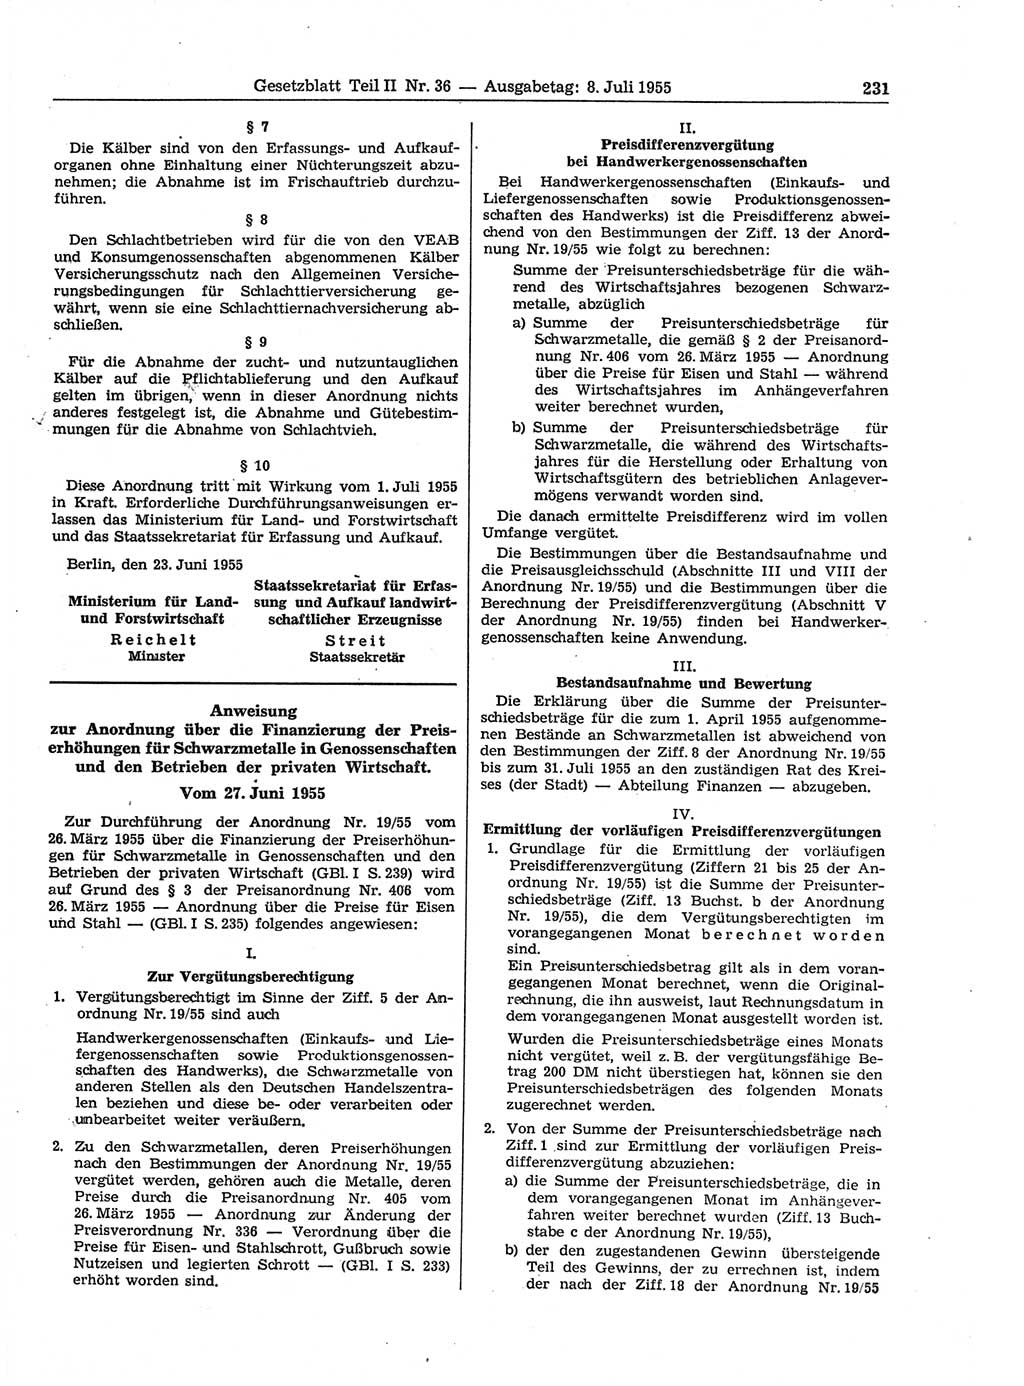 Gesetzblatt (GBl.) der Deutschen Demokratischen Republik (DDR) Teil ⅠⅠ 1955, Seite 231 (GBl. DDR ⅠⅠ 1955, S. 231)